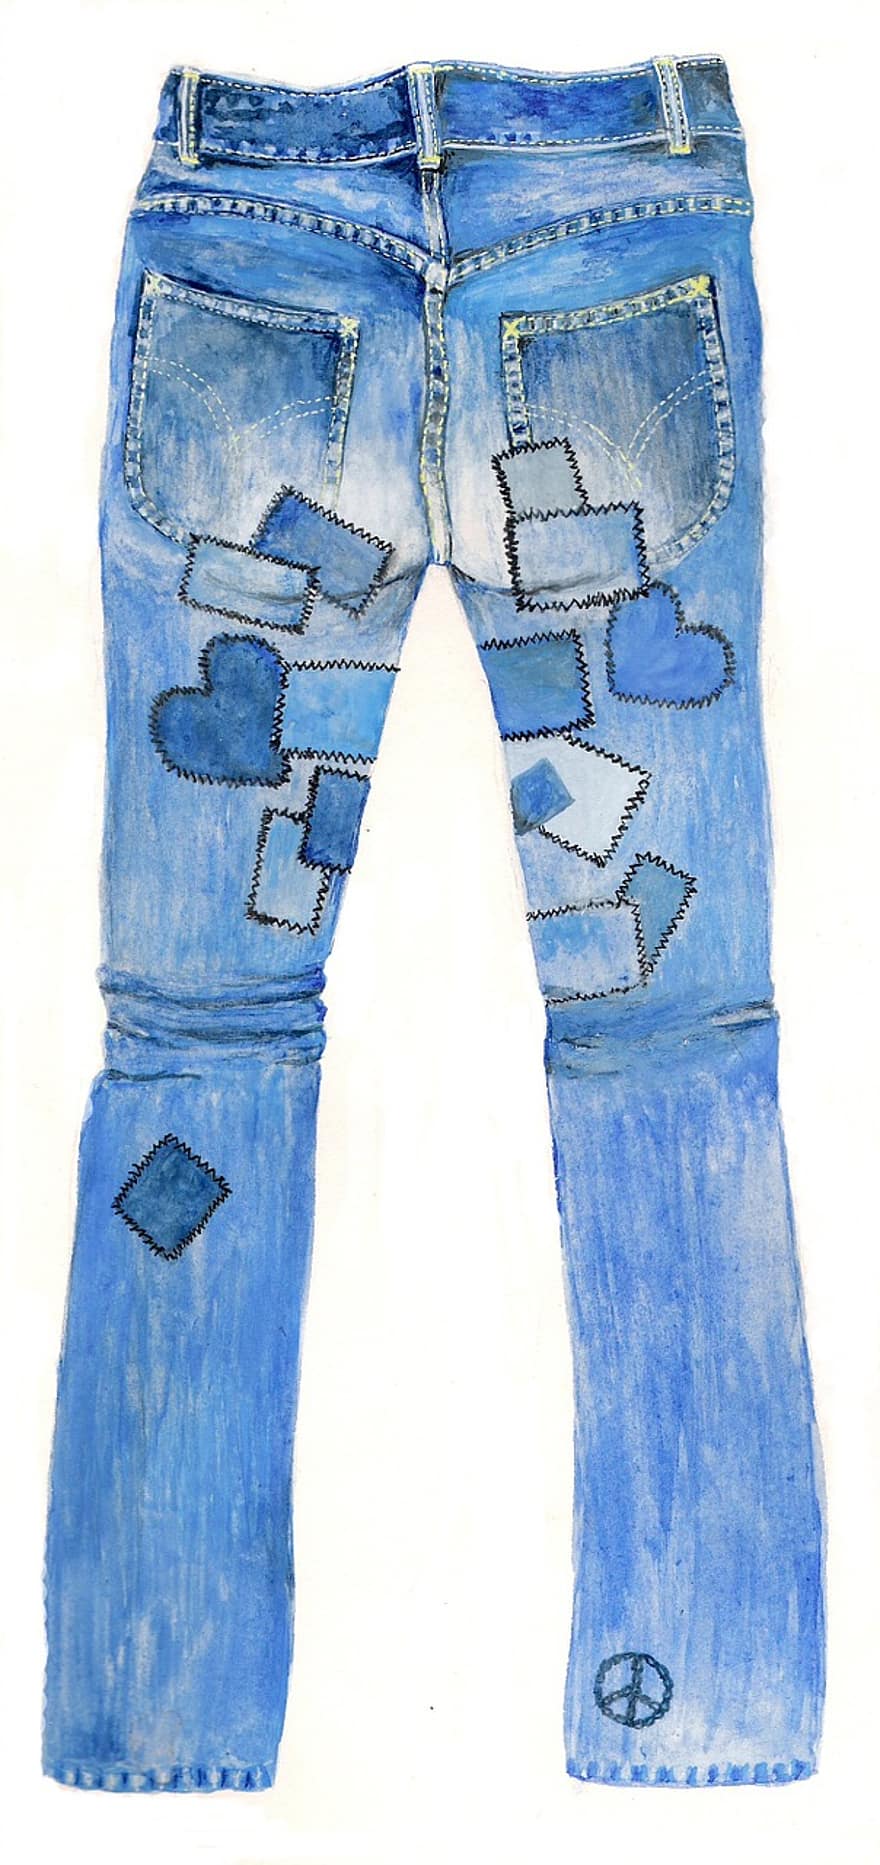 jeans, broek, blauwe spijkerbroek